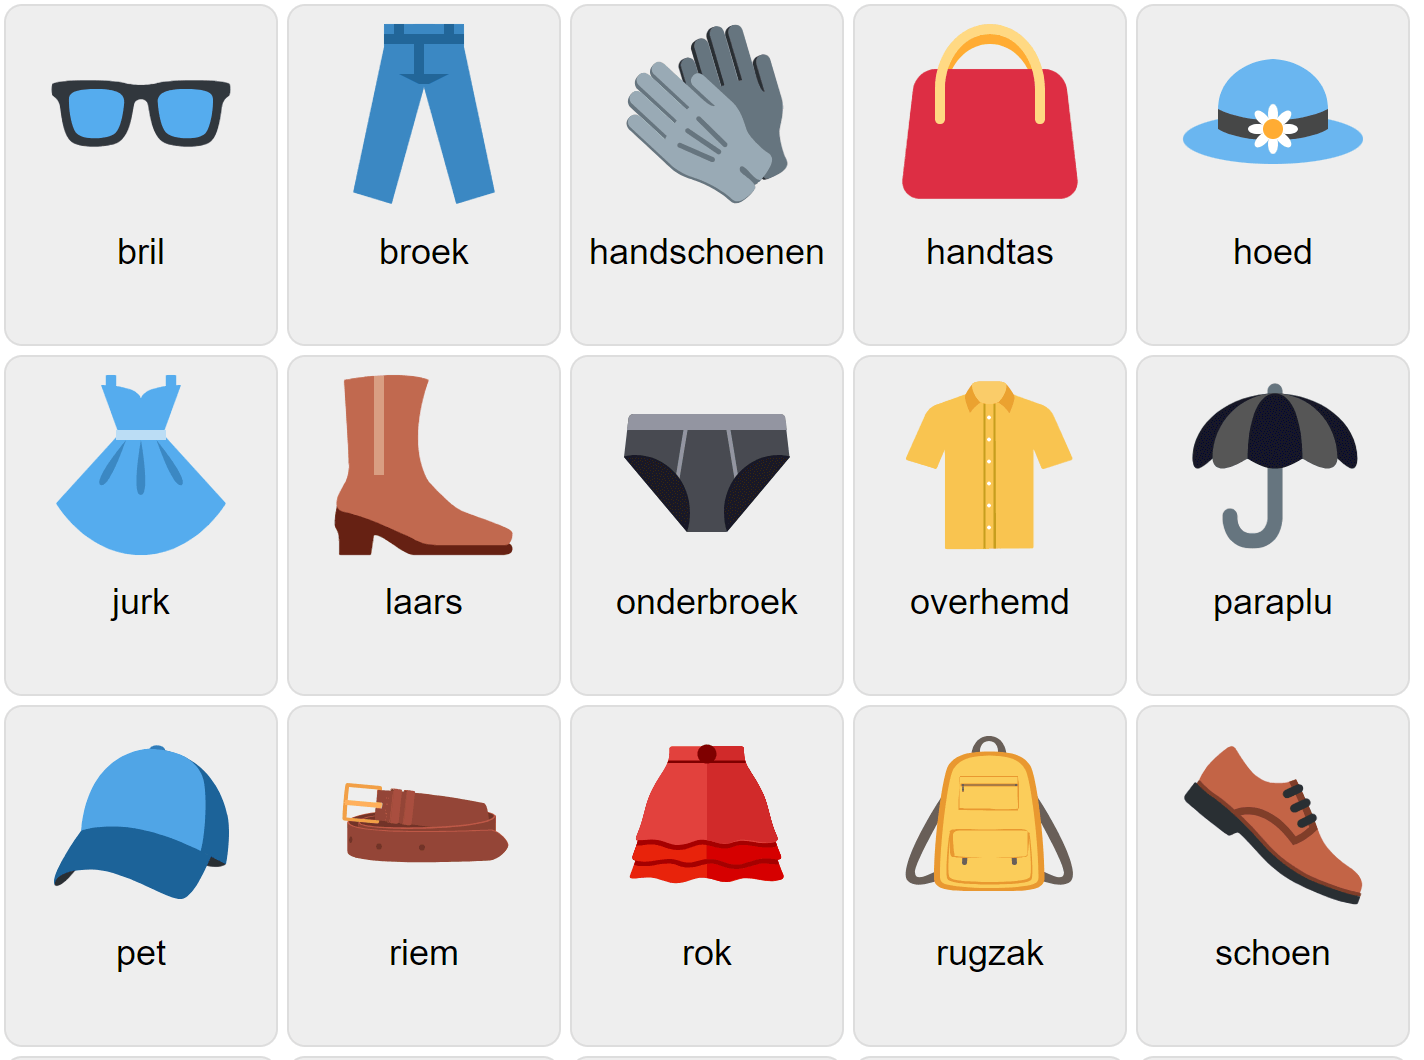 Kläder på nederländska